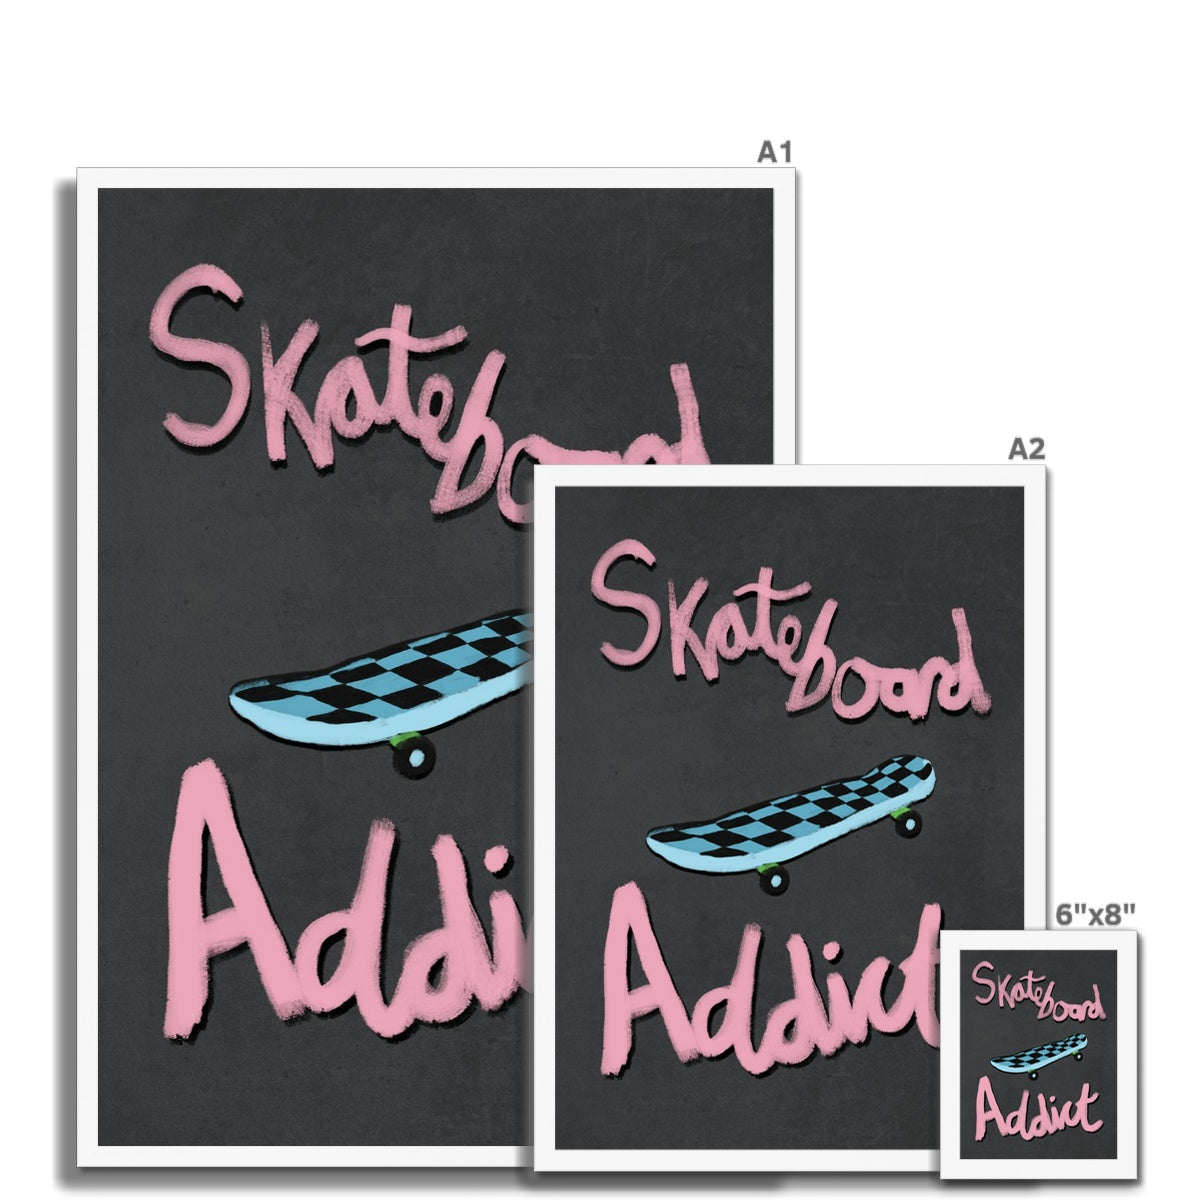 Skateboard Addict Grey, Pink, Blue Framed Print